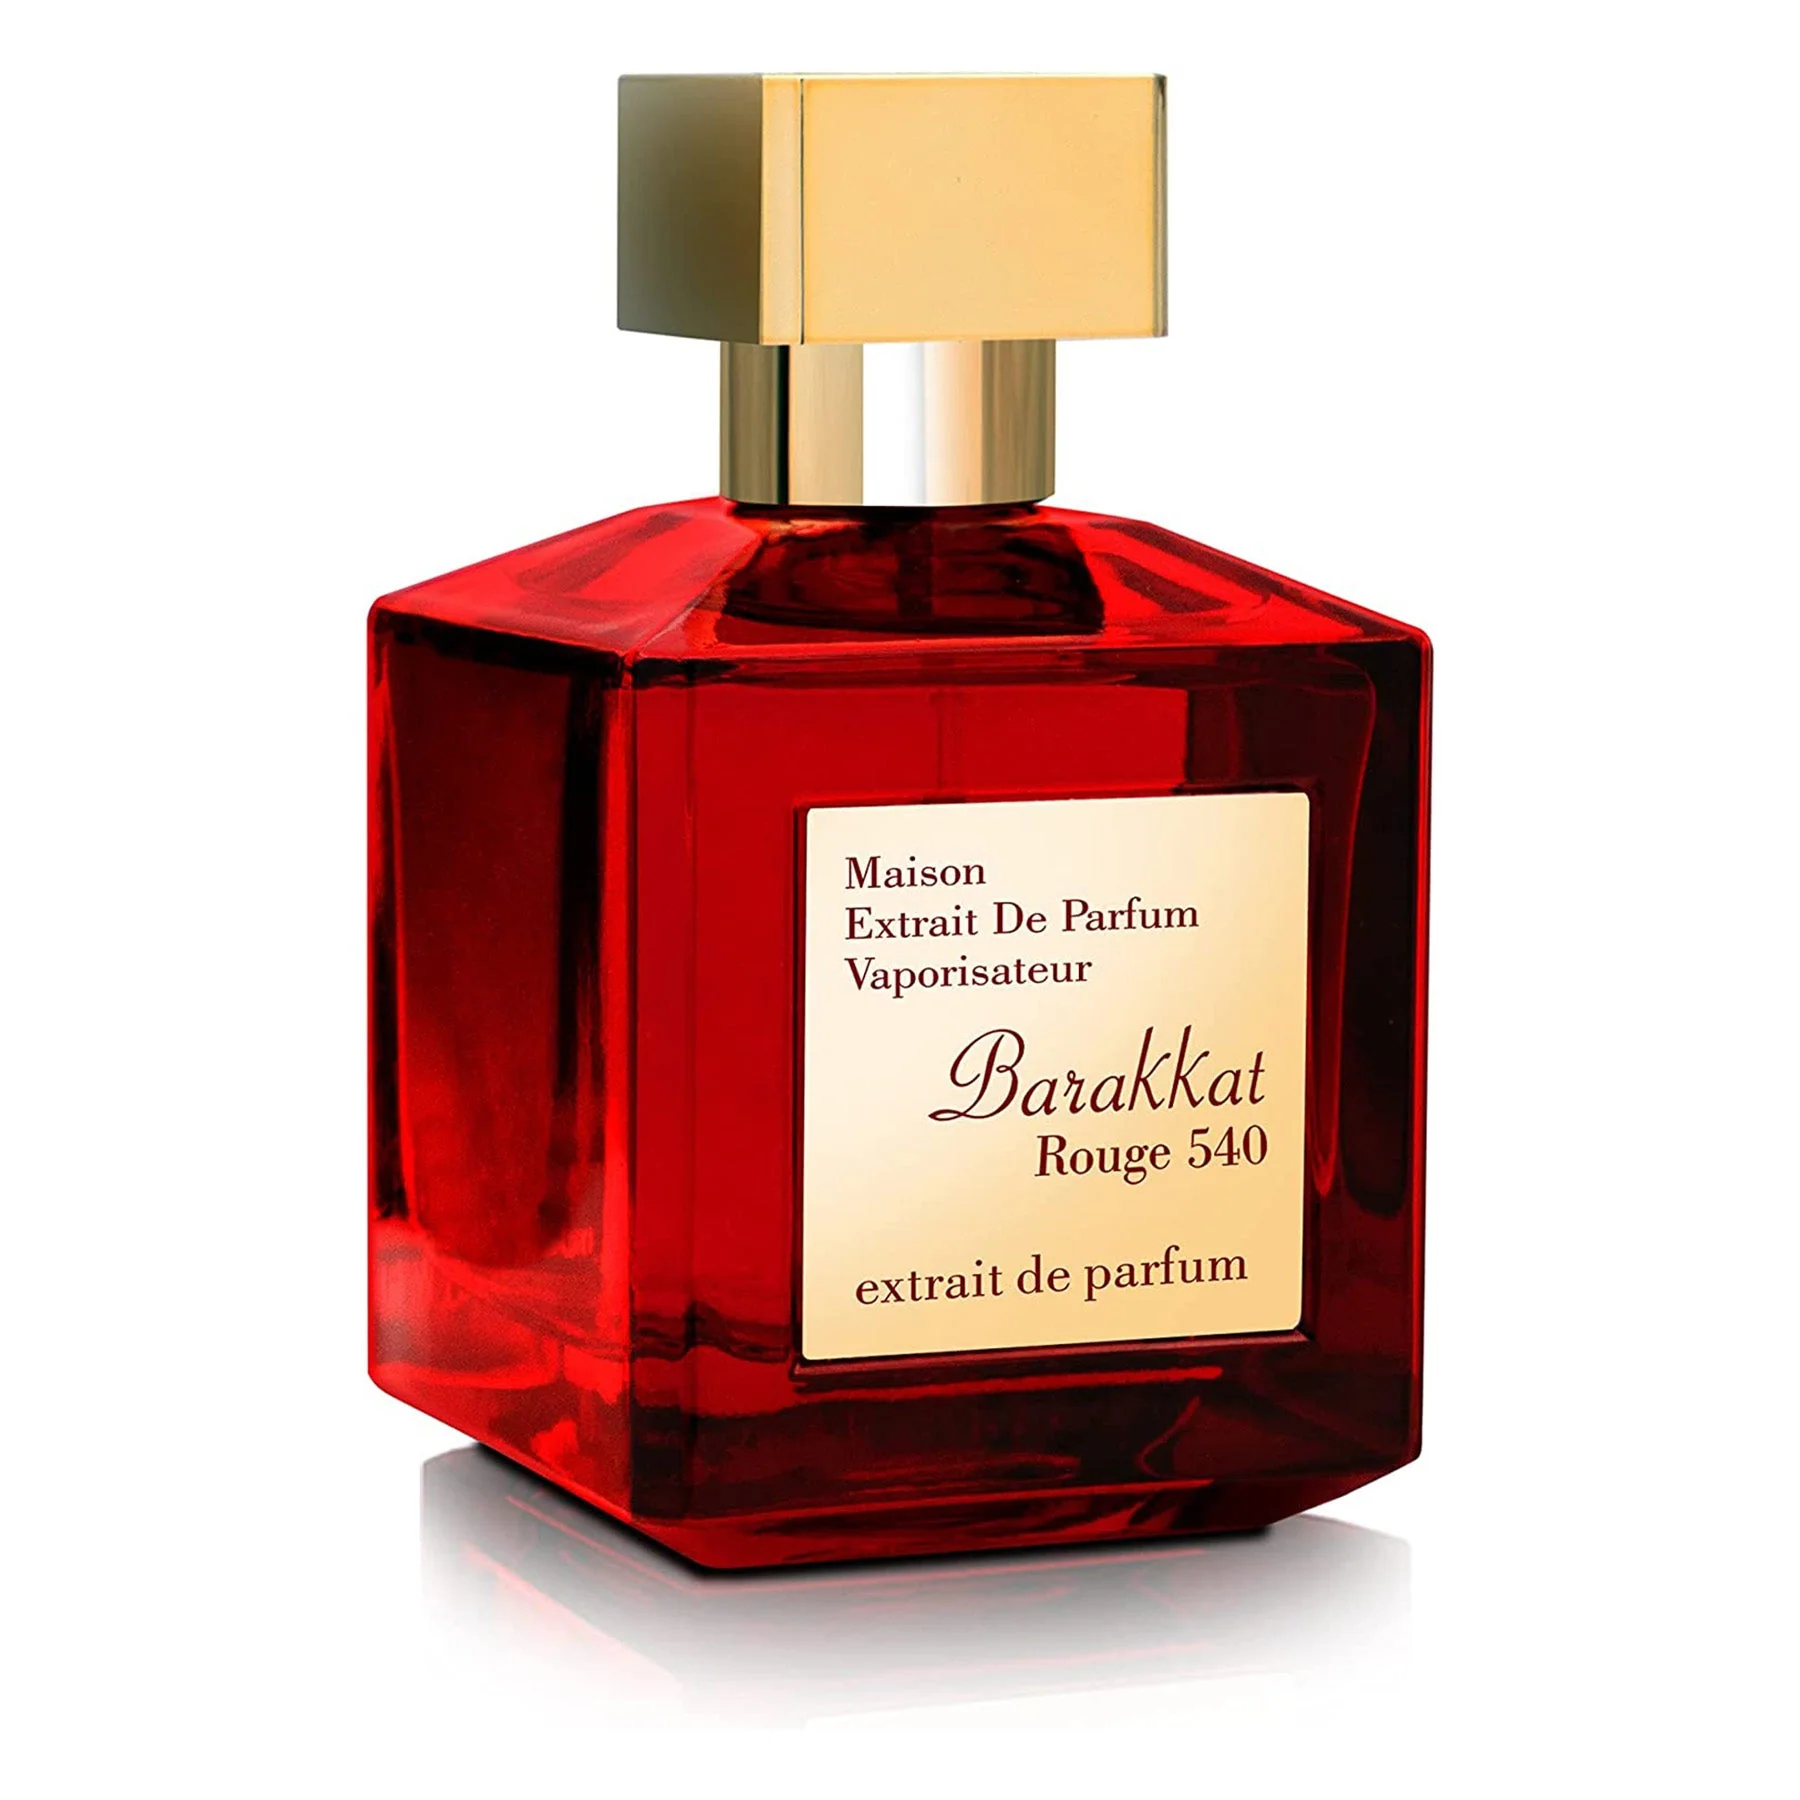 baccarat rouge 540 extrait de parfum pret Parfum Barakkat Rouge 540 Extract, Fragrance World, extract de parfum 100 ml, unisex - inspirat din Baccarat Rouge 540 by Maison Francis Kurkdjian